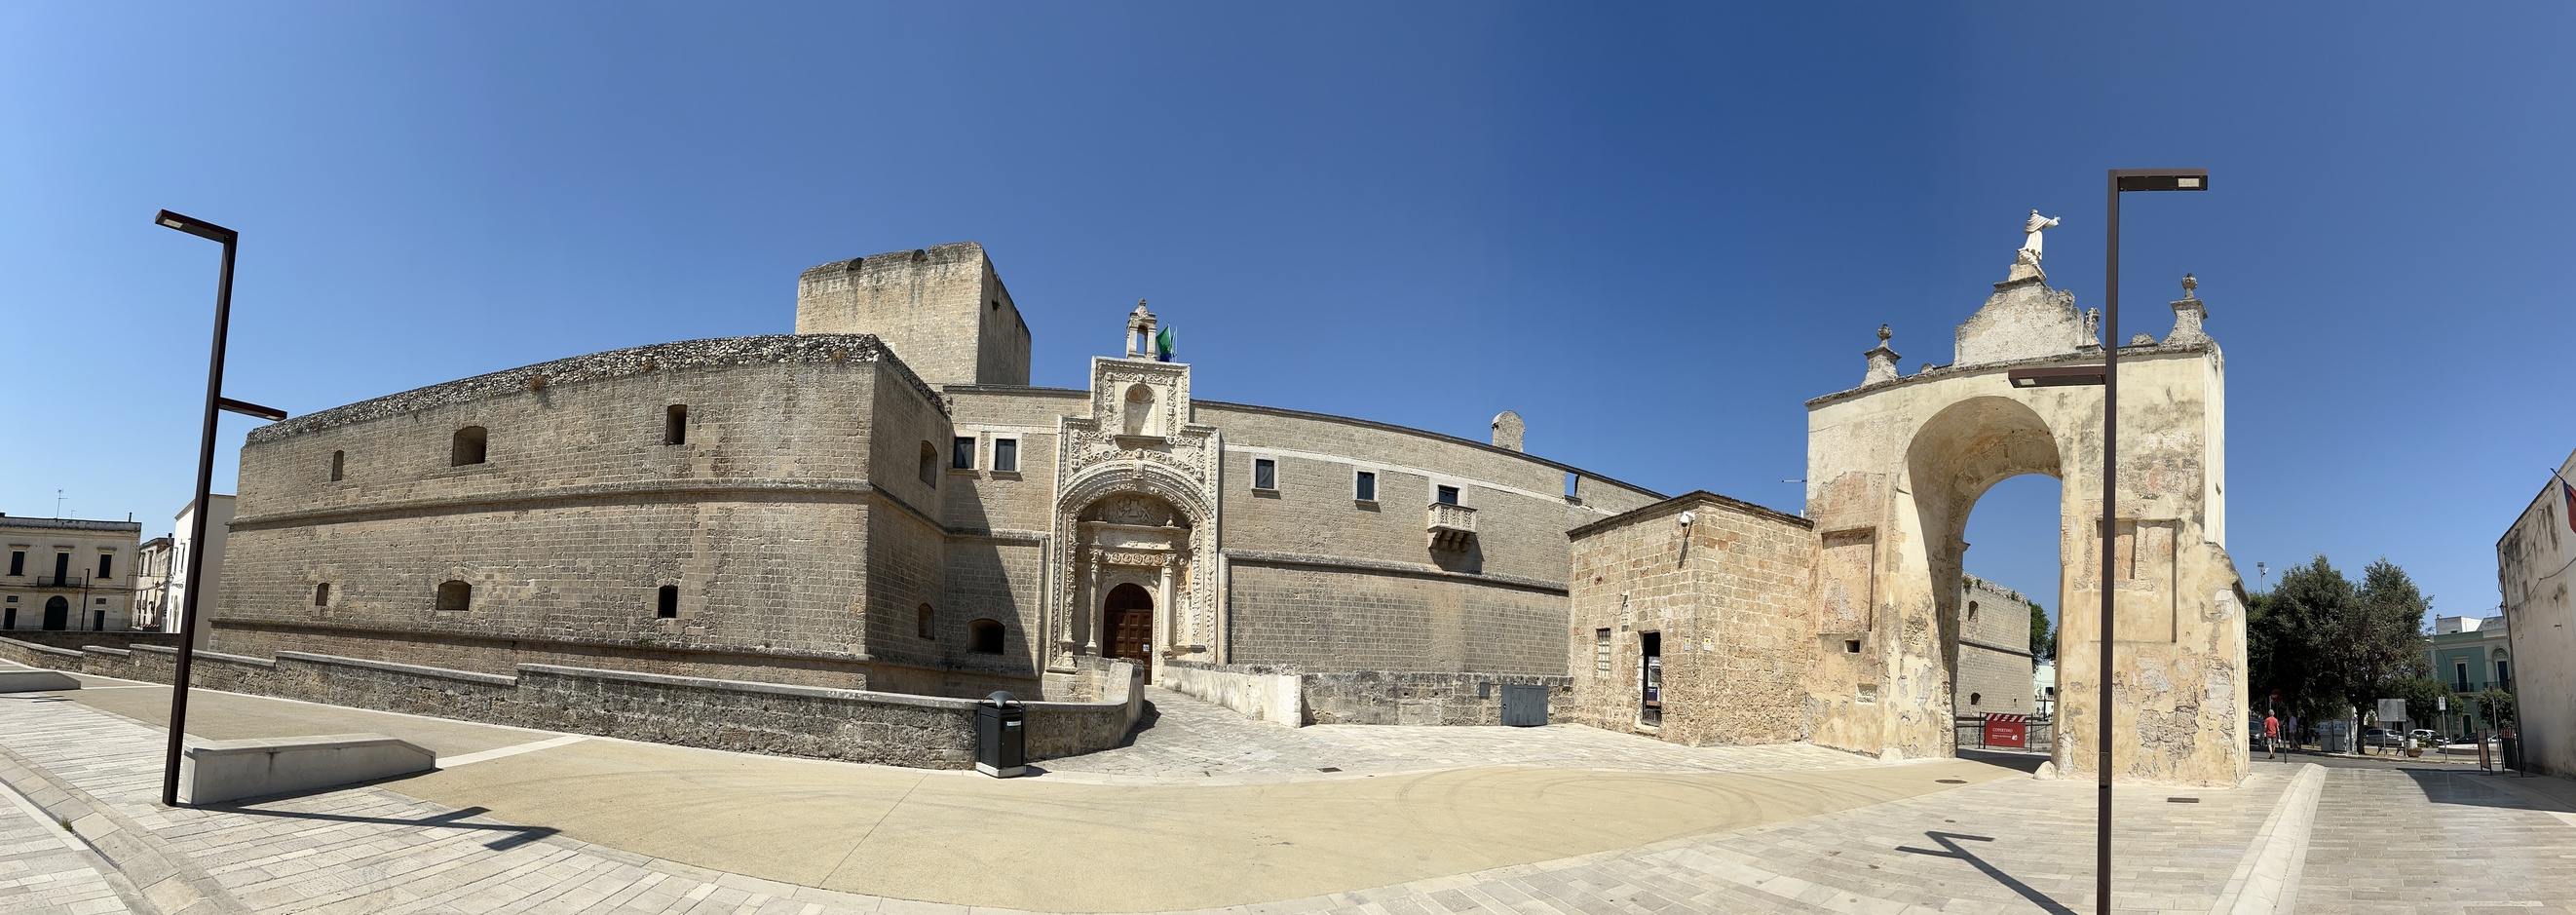 Copertino - Castello Angioino e Porta San Giuseppe.